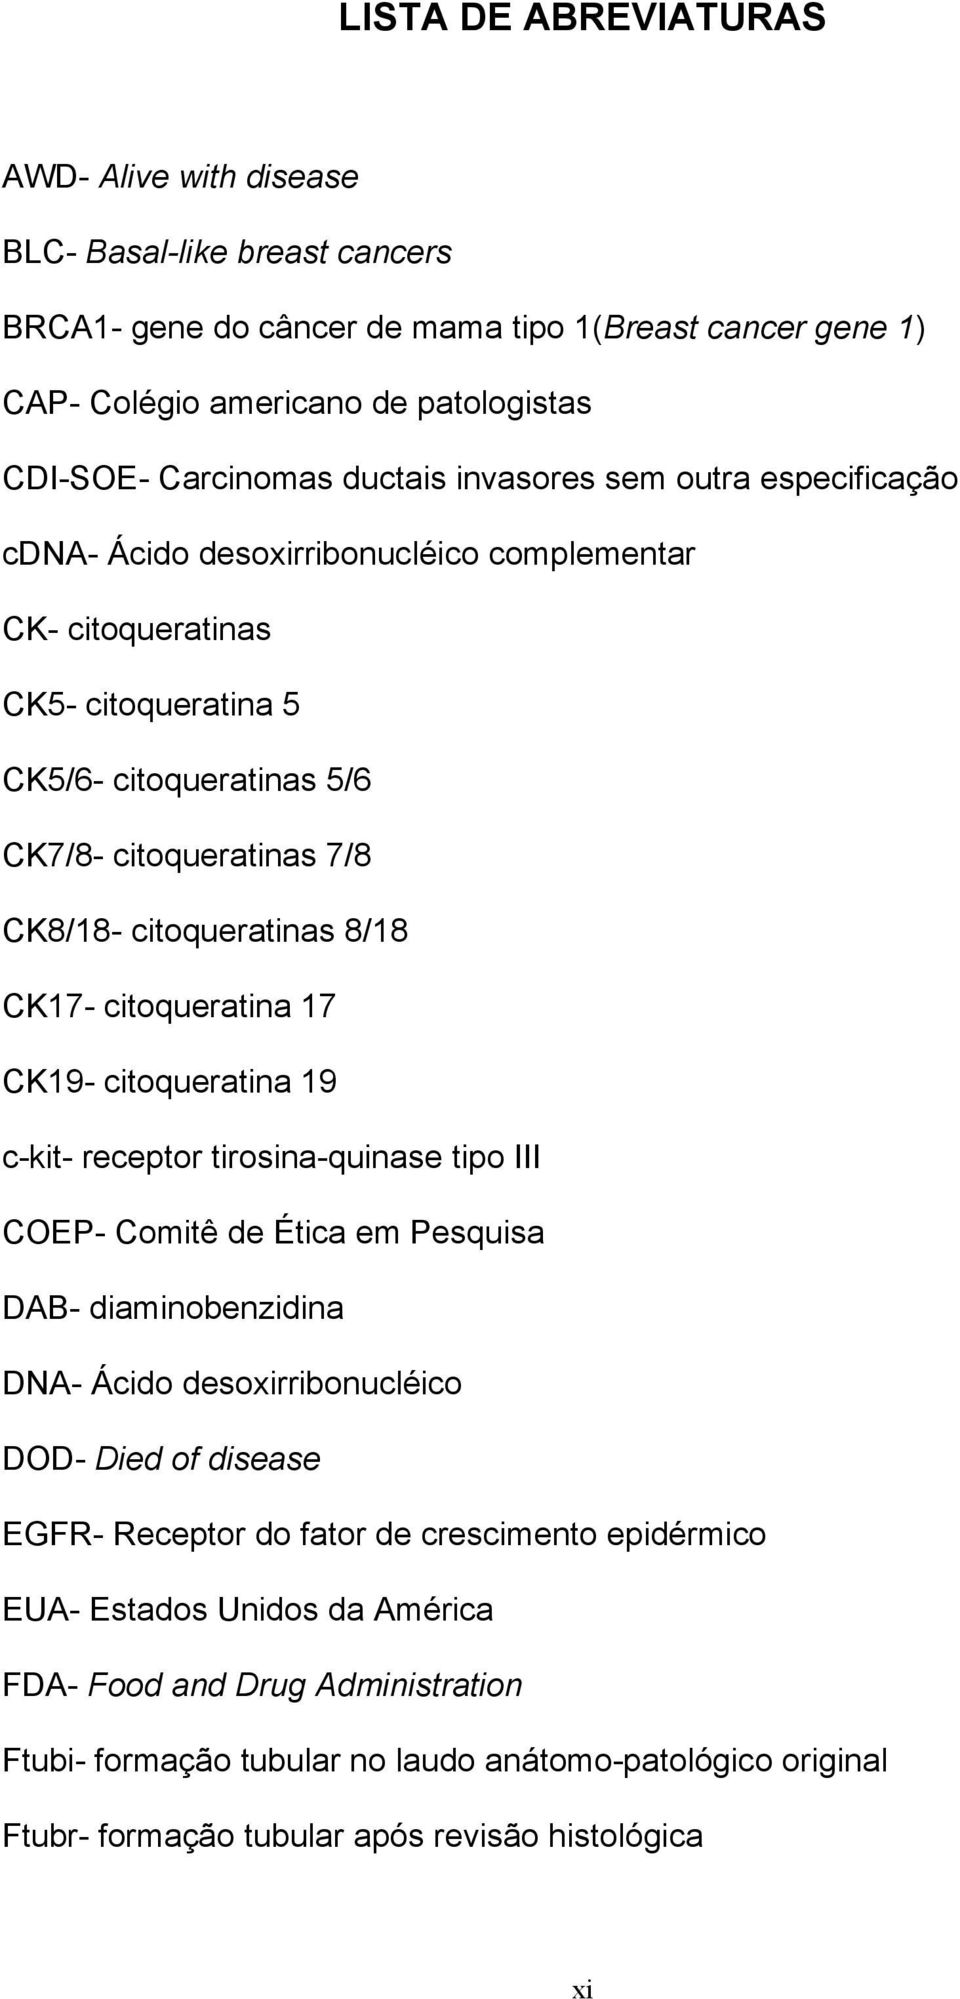 citoqueratinas 8/18 CK17- citoqueratina 17 CK19- citoqueratina 19 c-kit- receptor tirosina-quinase tipo III COEP- Comitê de Ética em Pesquisa DAB- diaminobenzidina DNA- Ácido desoxirribonucléico DOD-